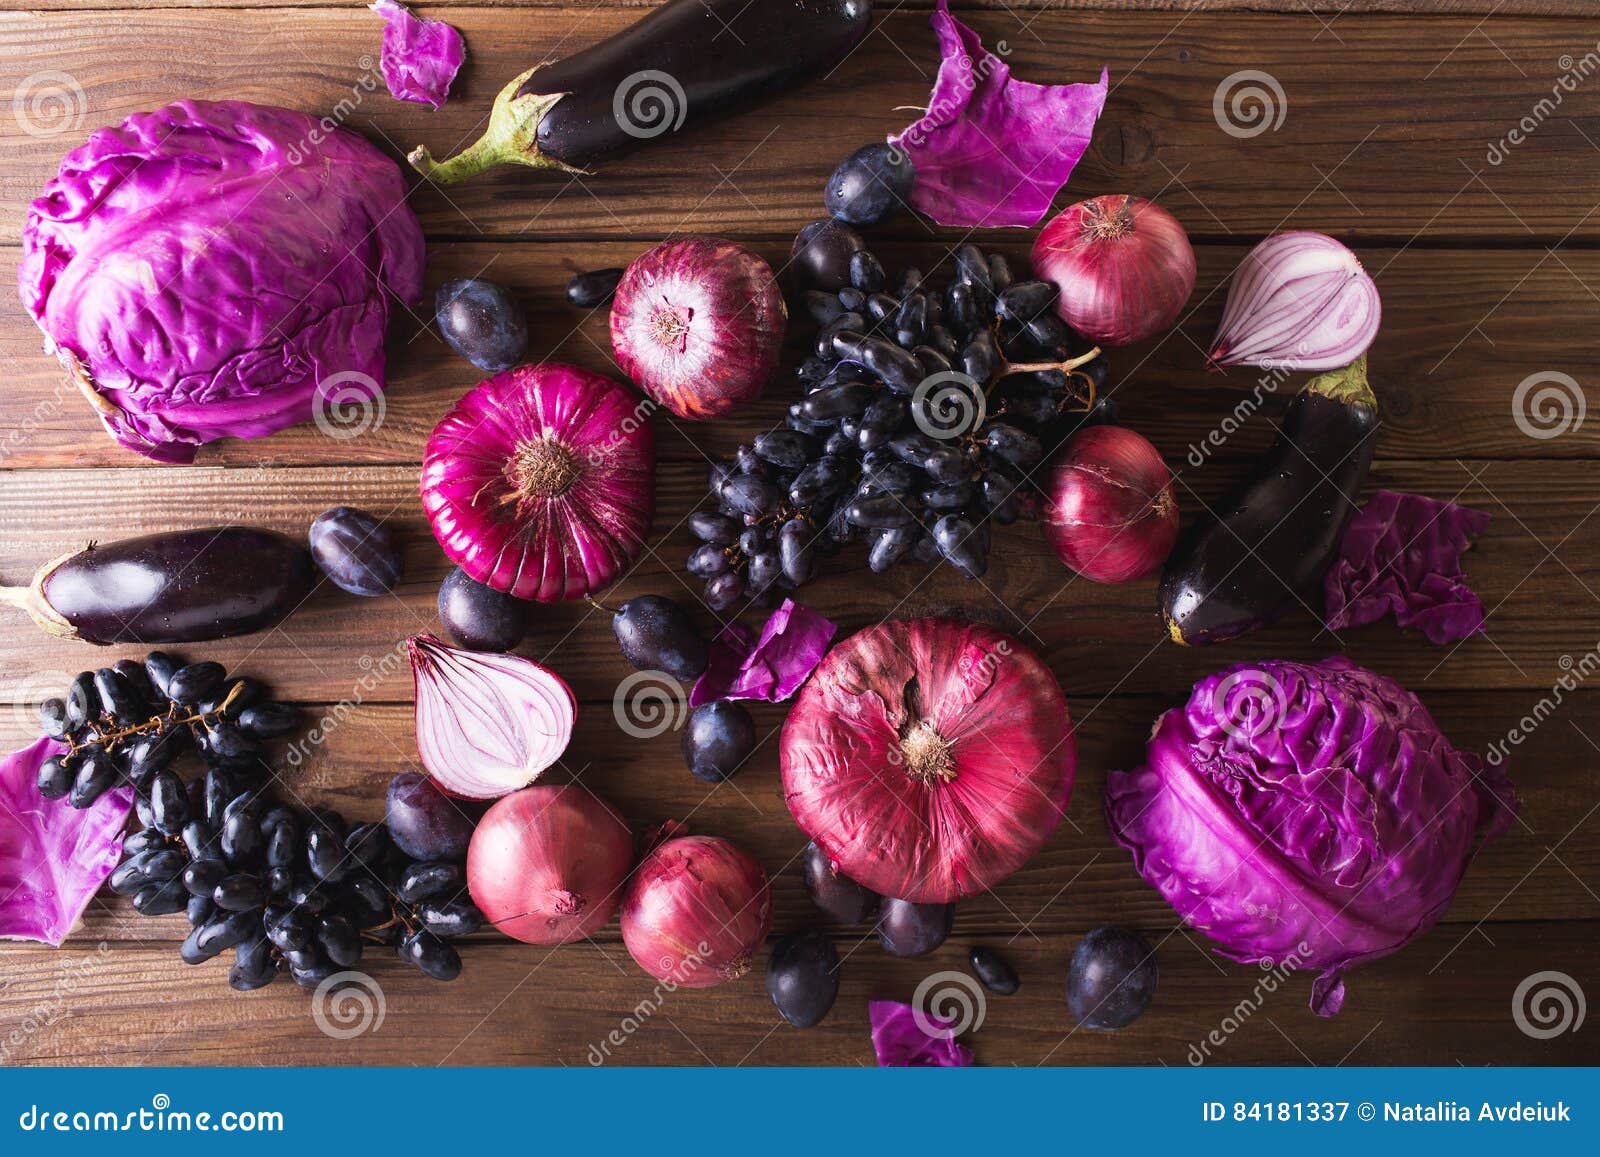 Purpurrote Obst Und Gemuse Blaue Zwiebel Purpurroter Kohl Aubergine Trauben Und Pflaumen Stockbild Bild Von Pflaumen Gemuse